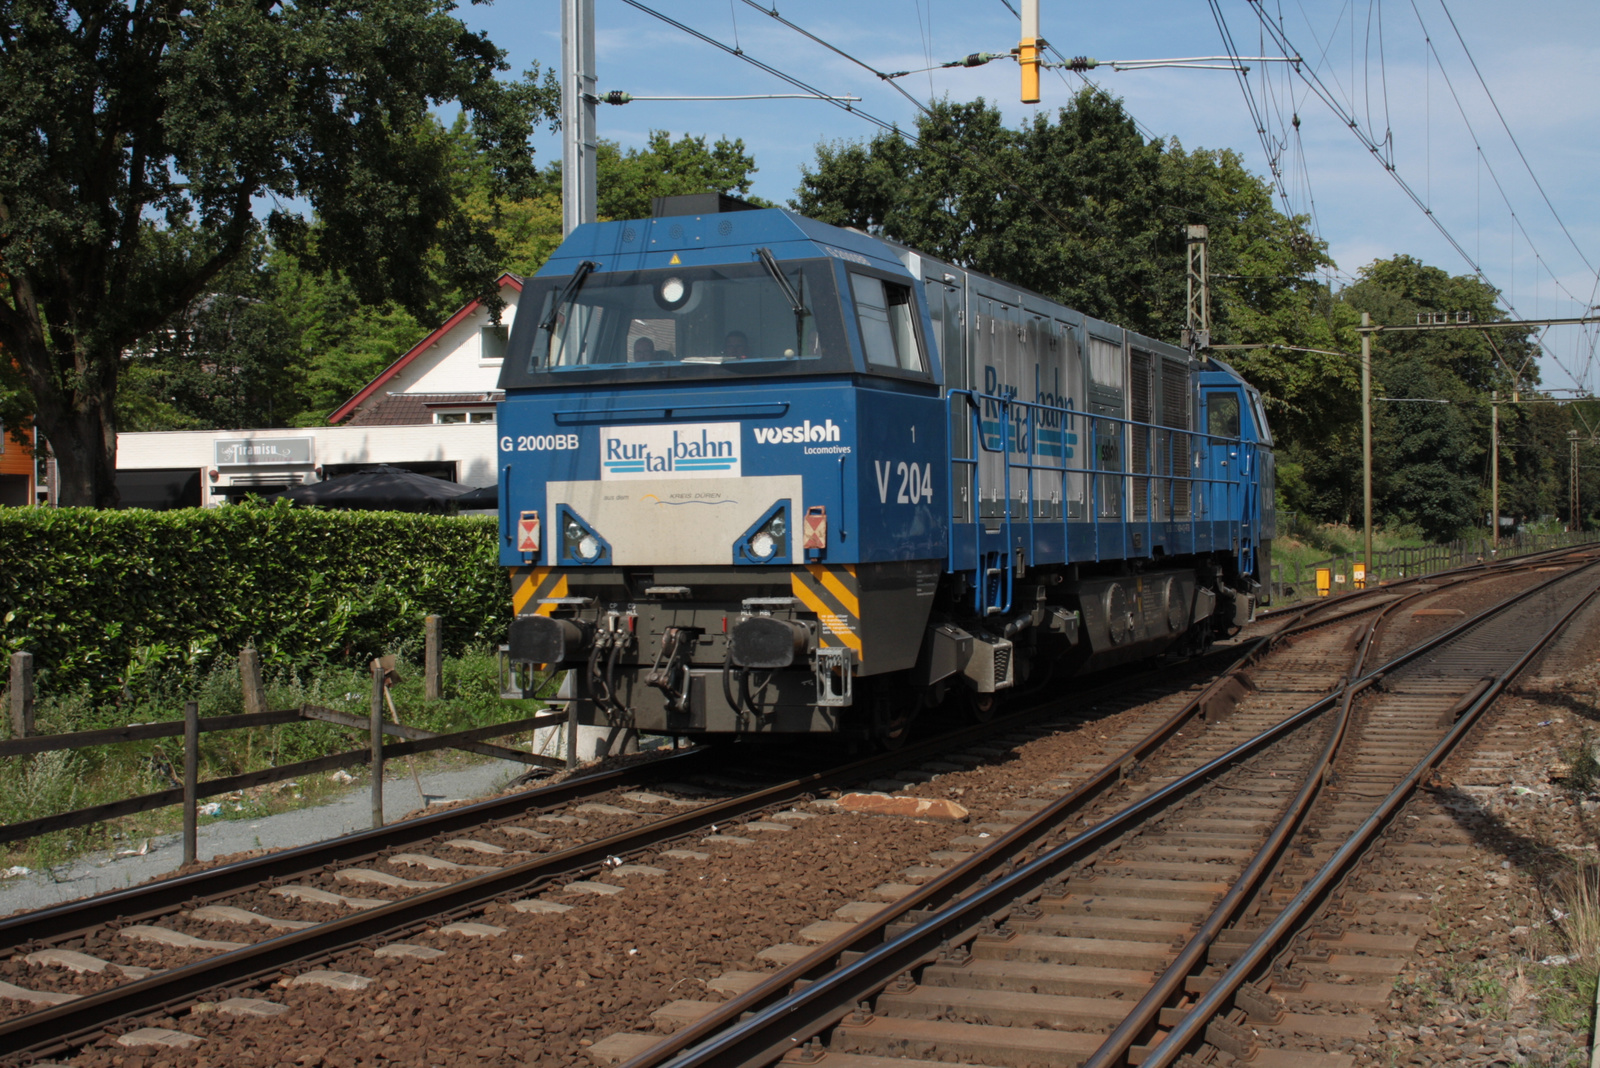 Rurtalbahn V204 Vossloh 2